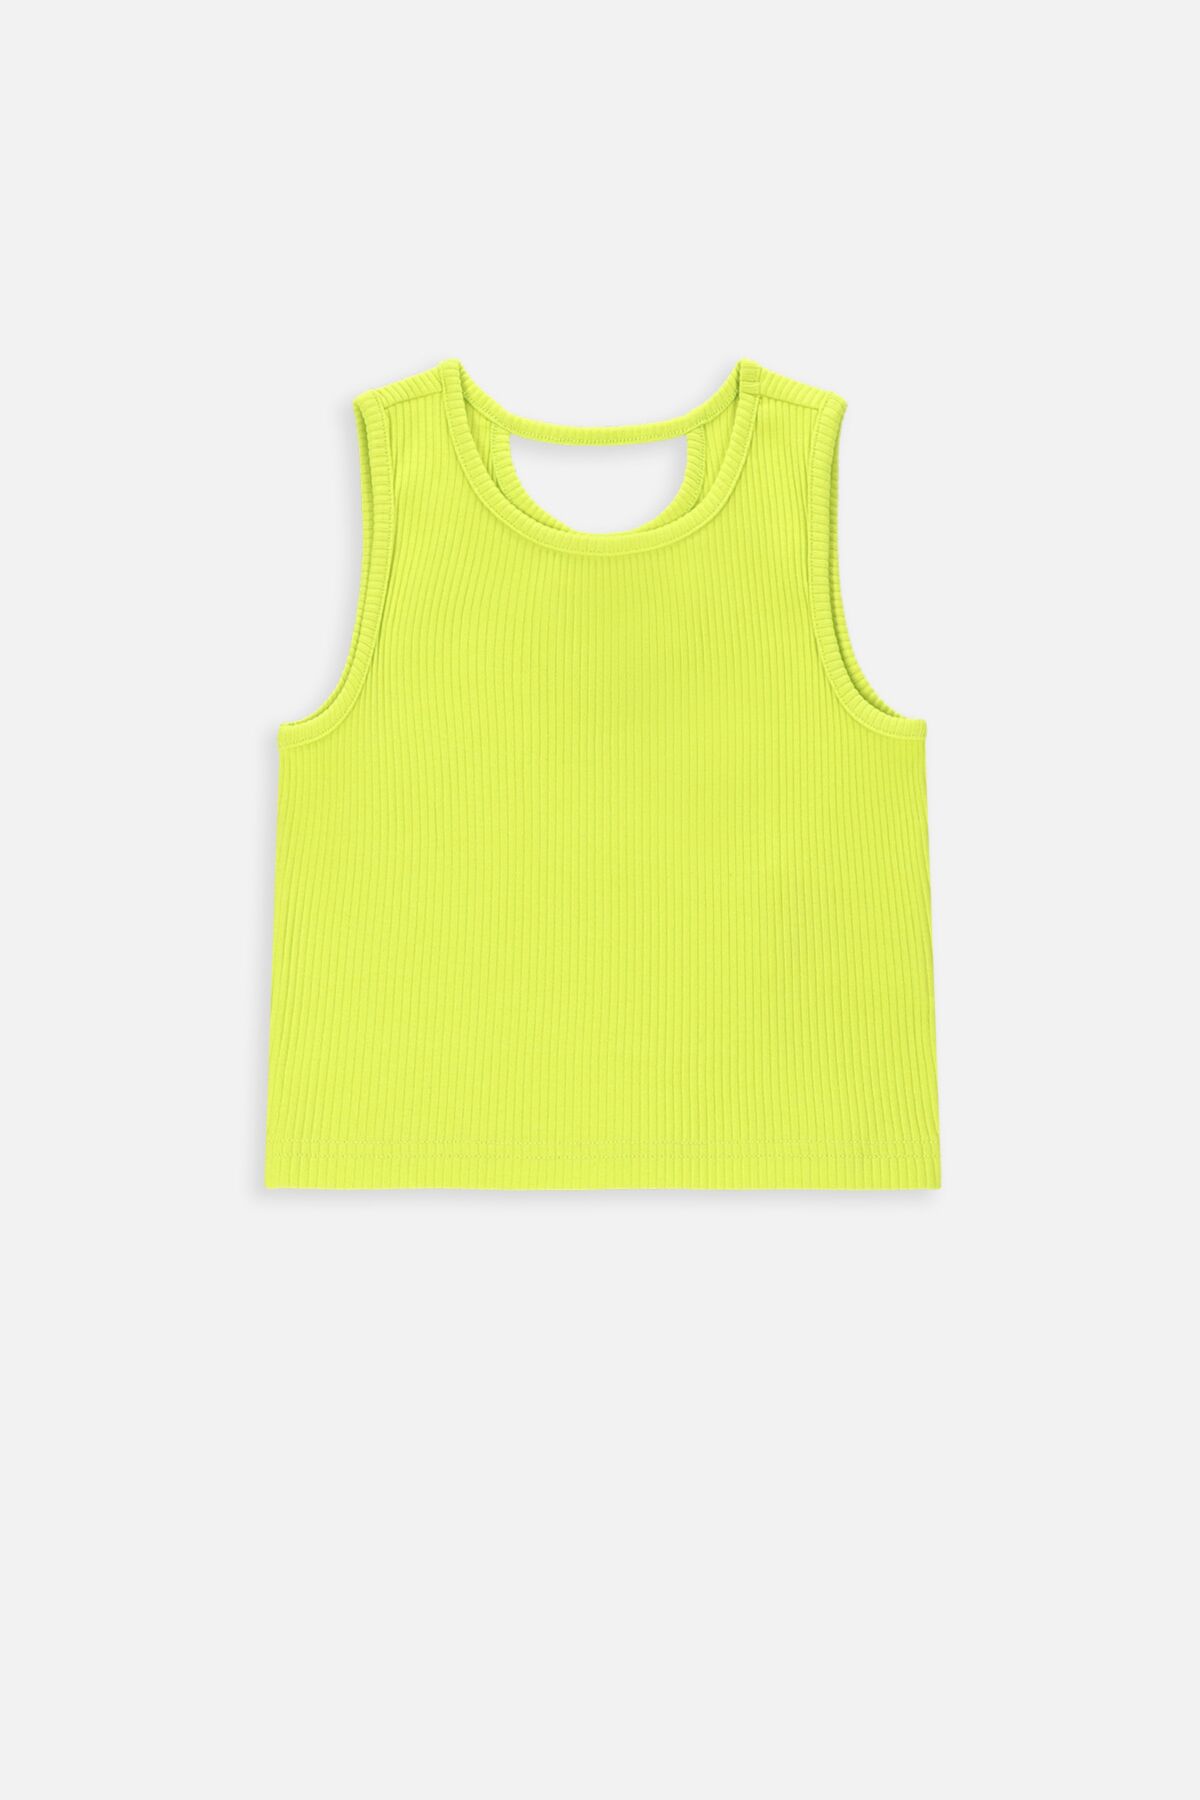 T-shirt bez rękawów limonkowy prążkowany 2235530